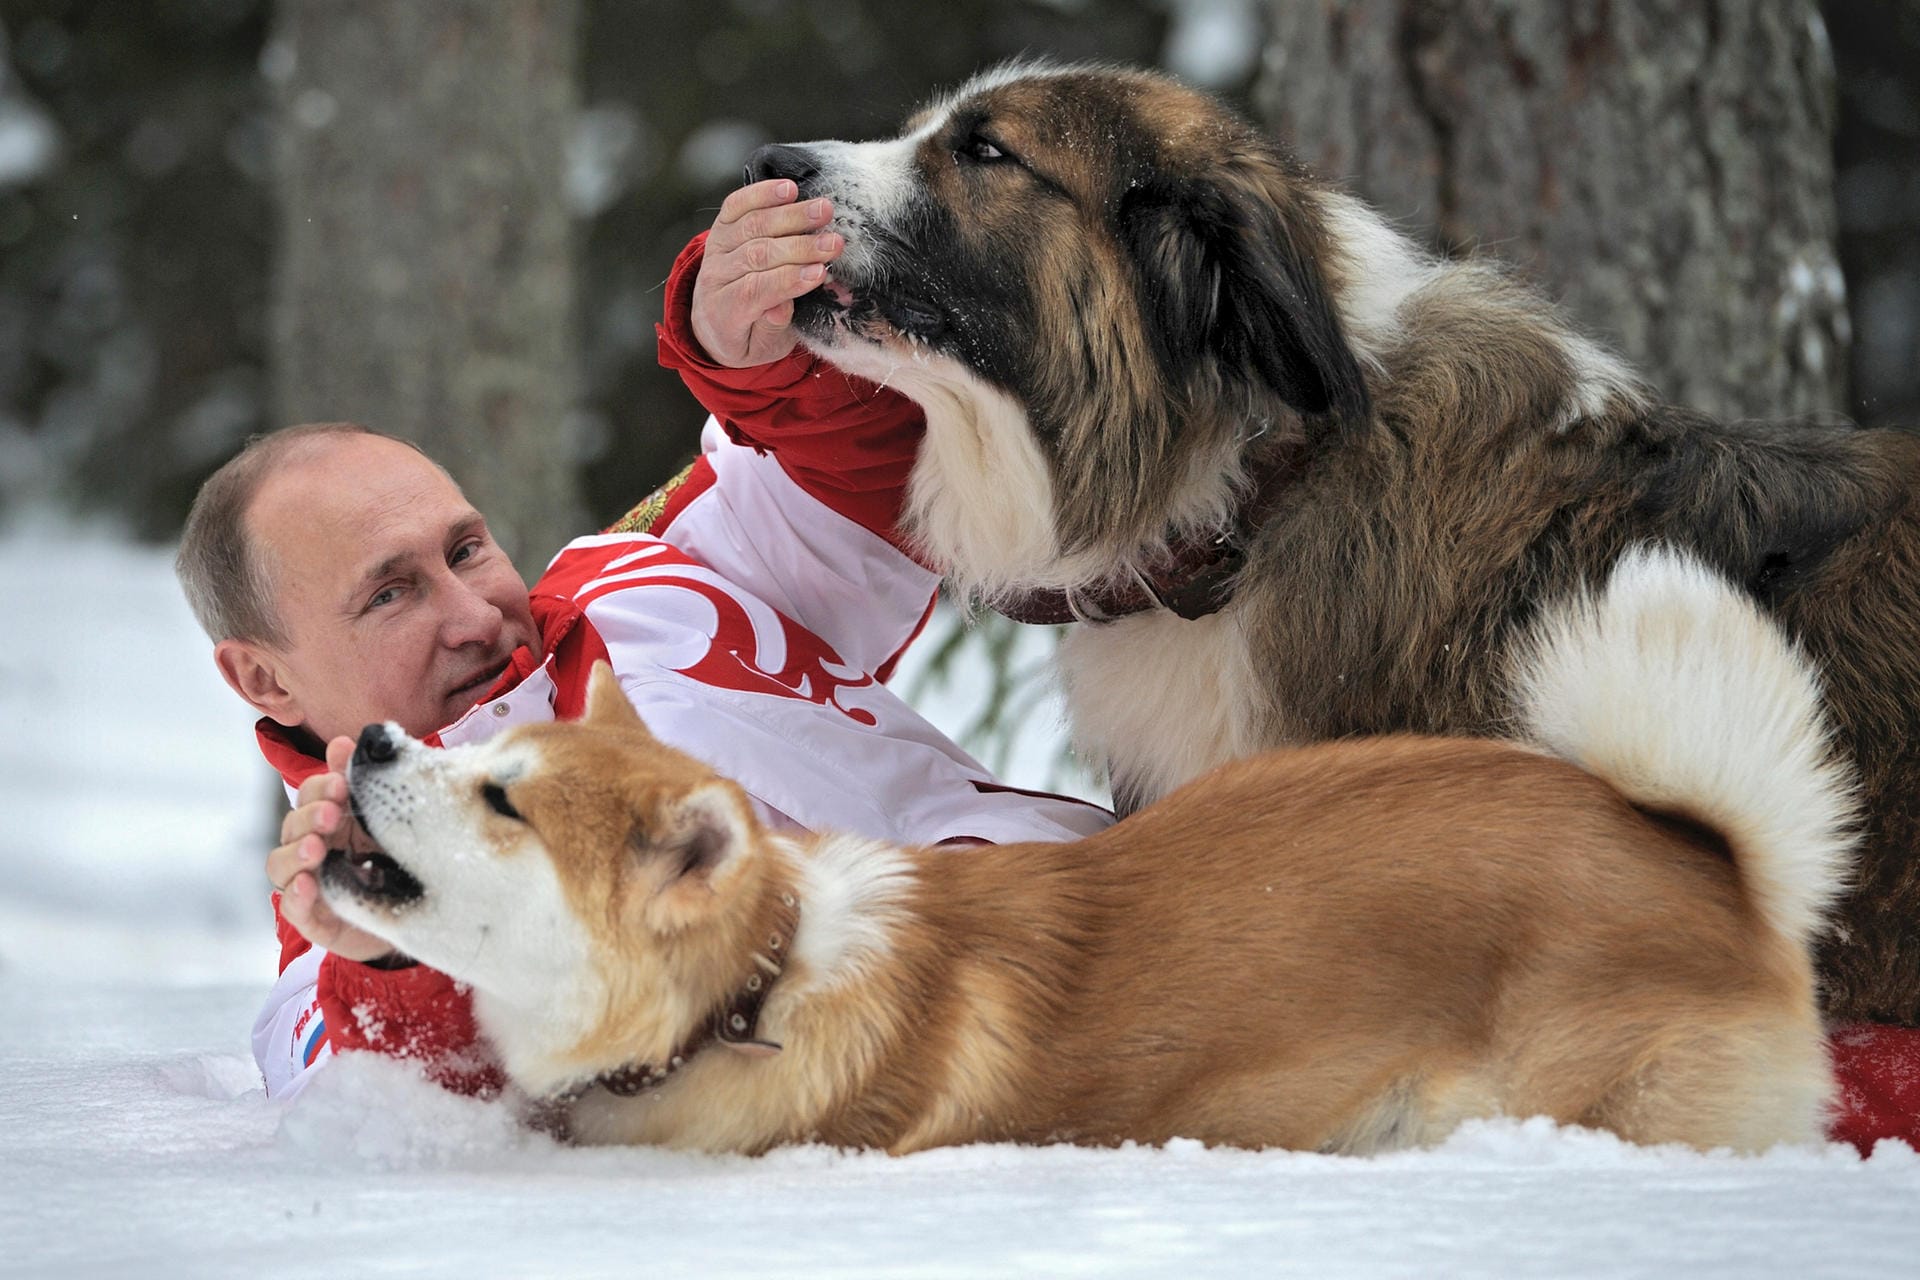 Dafür hat Putin Hunde. Oooooooooohhhhhhhhh.